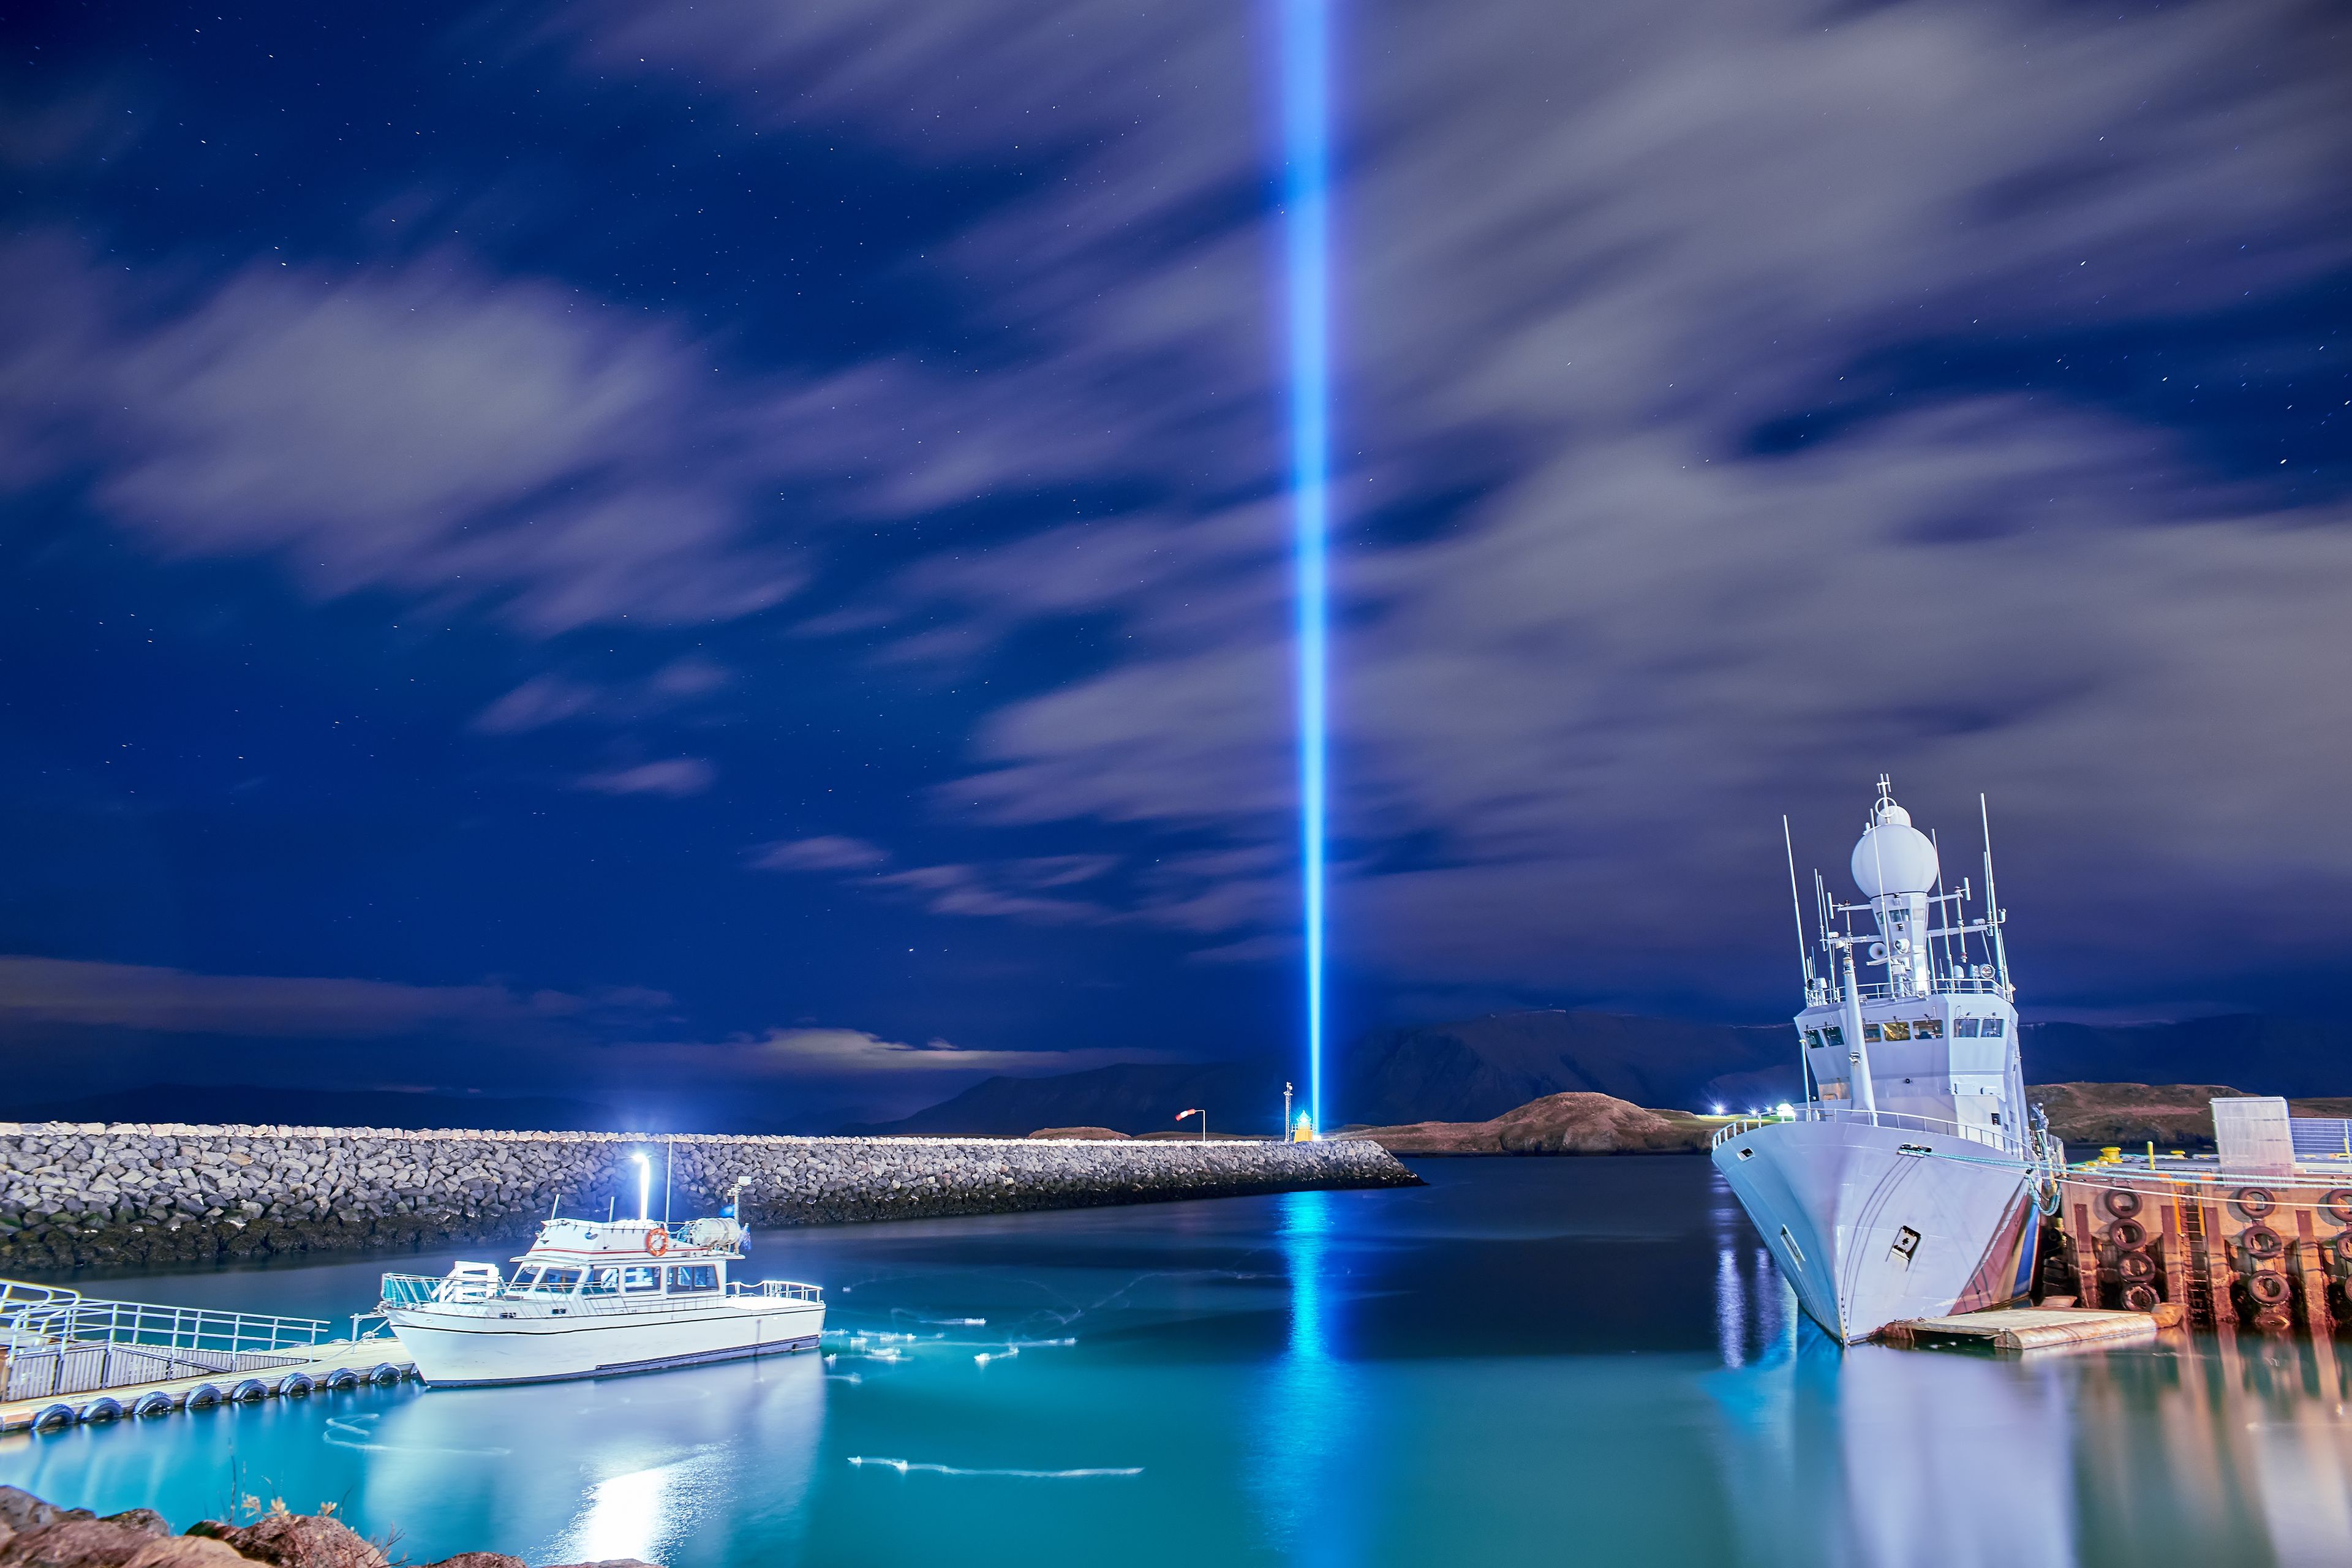 Lighting of the Imagine Peace Tower in Reykjavik on John Lennon's birthday